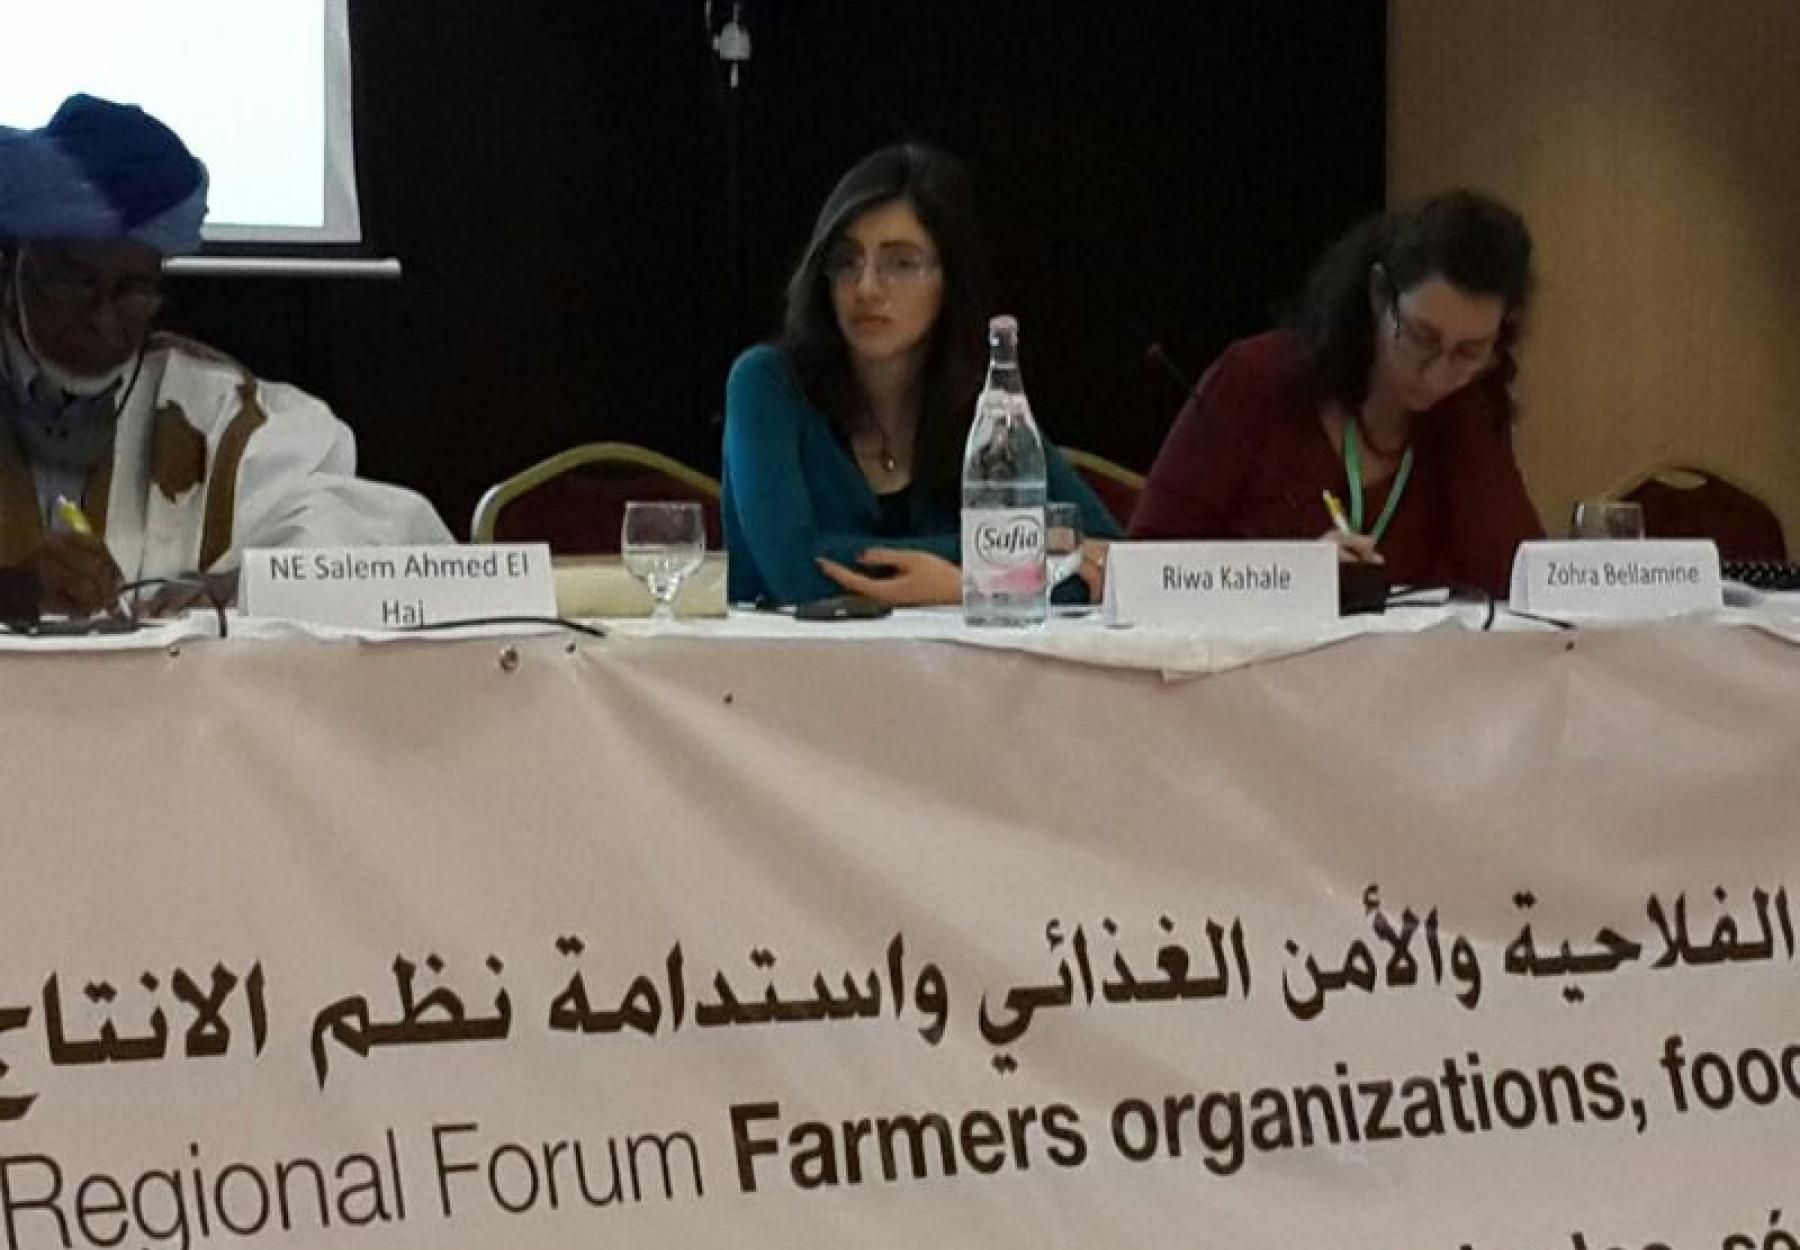 المنظمات العربية ترفض تدخل الفاو في قرارات المنتدى الإقليمي العربي حول الأمن الغذائي في تونس